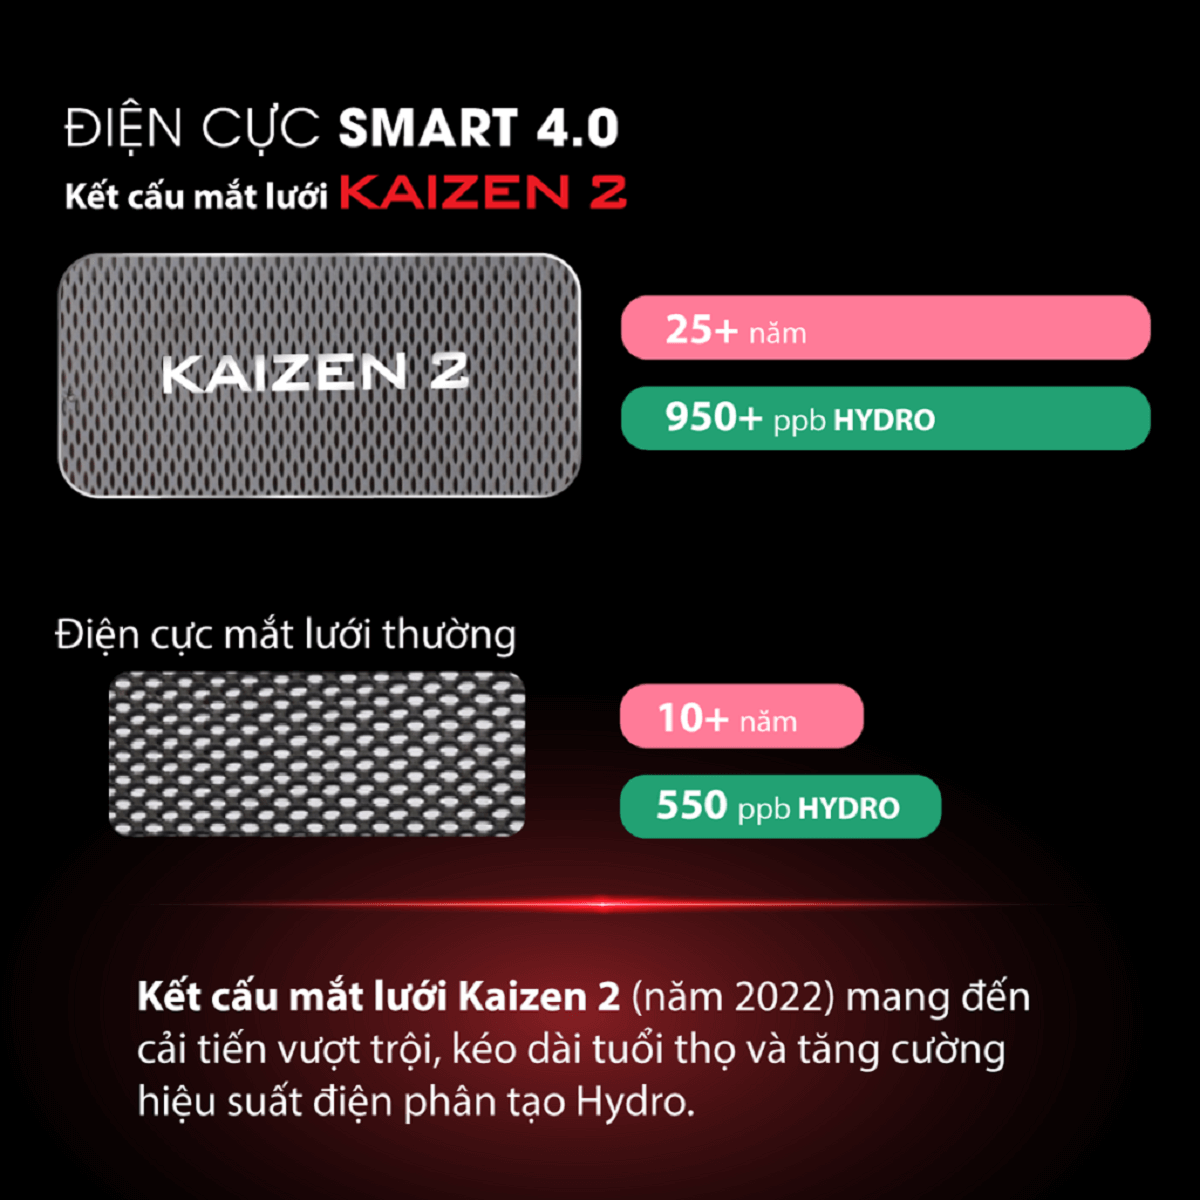 7 tấm điện cực mắt lưới Kaizen 2 của máy điện giải ion kiềm Fuji Smart U60 có hiệu suất điện phân mạnh mẽ